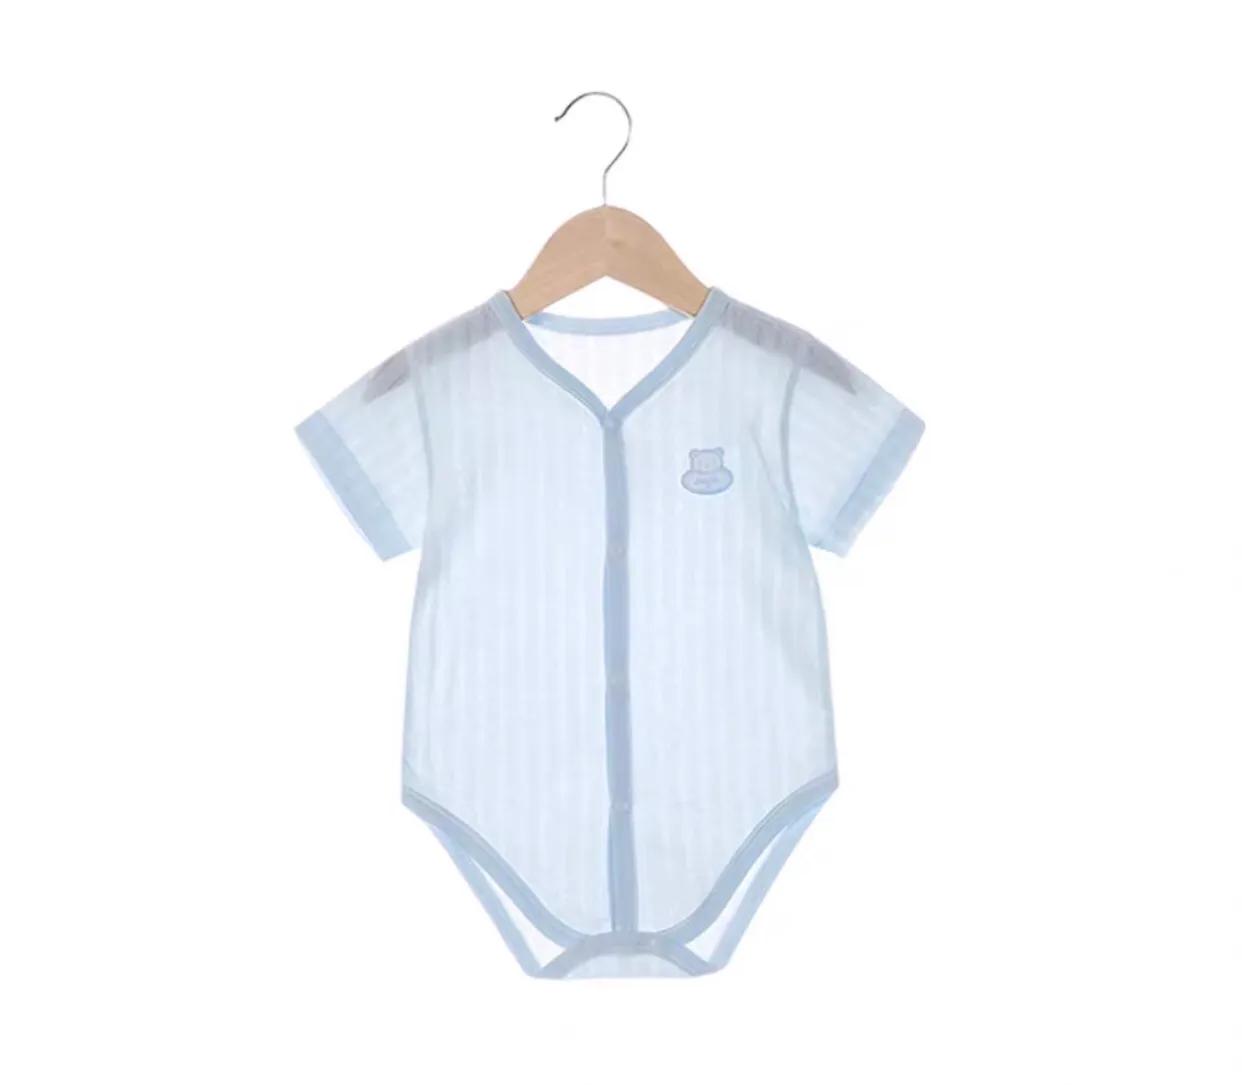 新生儿衣物采购标准